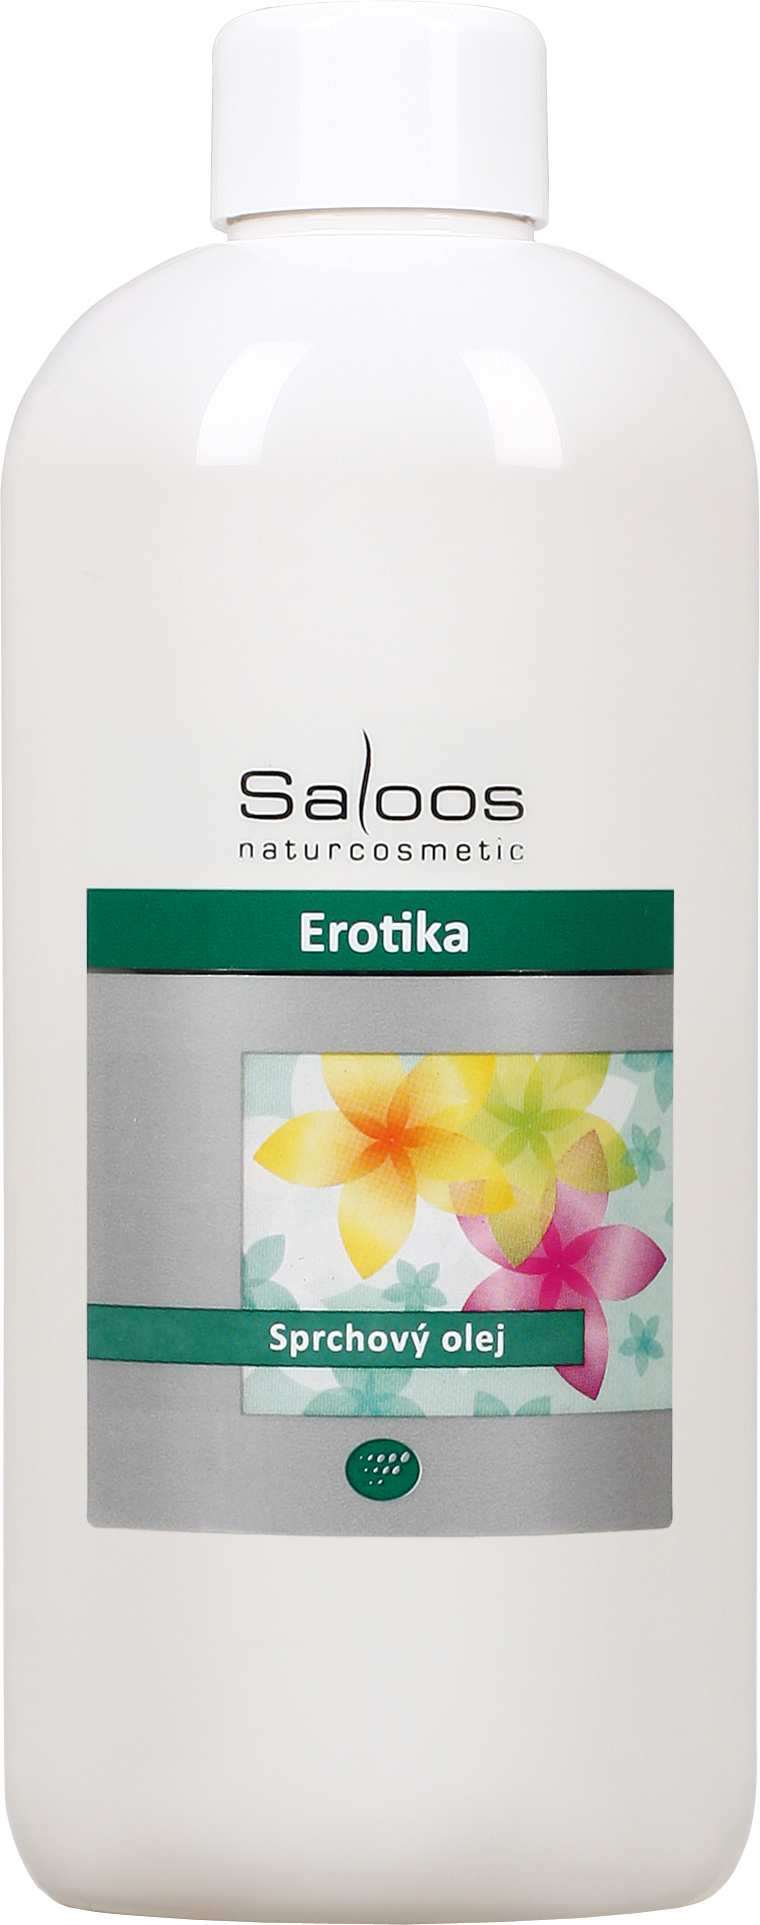 Saloos Erotika - sprchový olej Balení: 500 ml